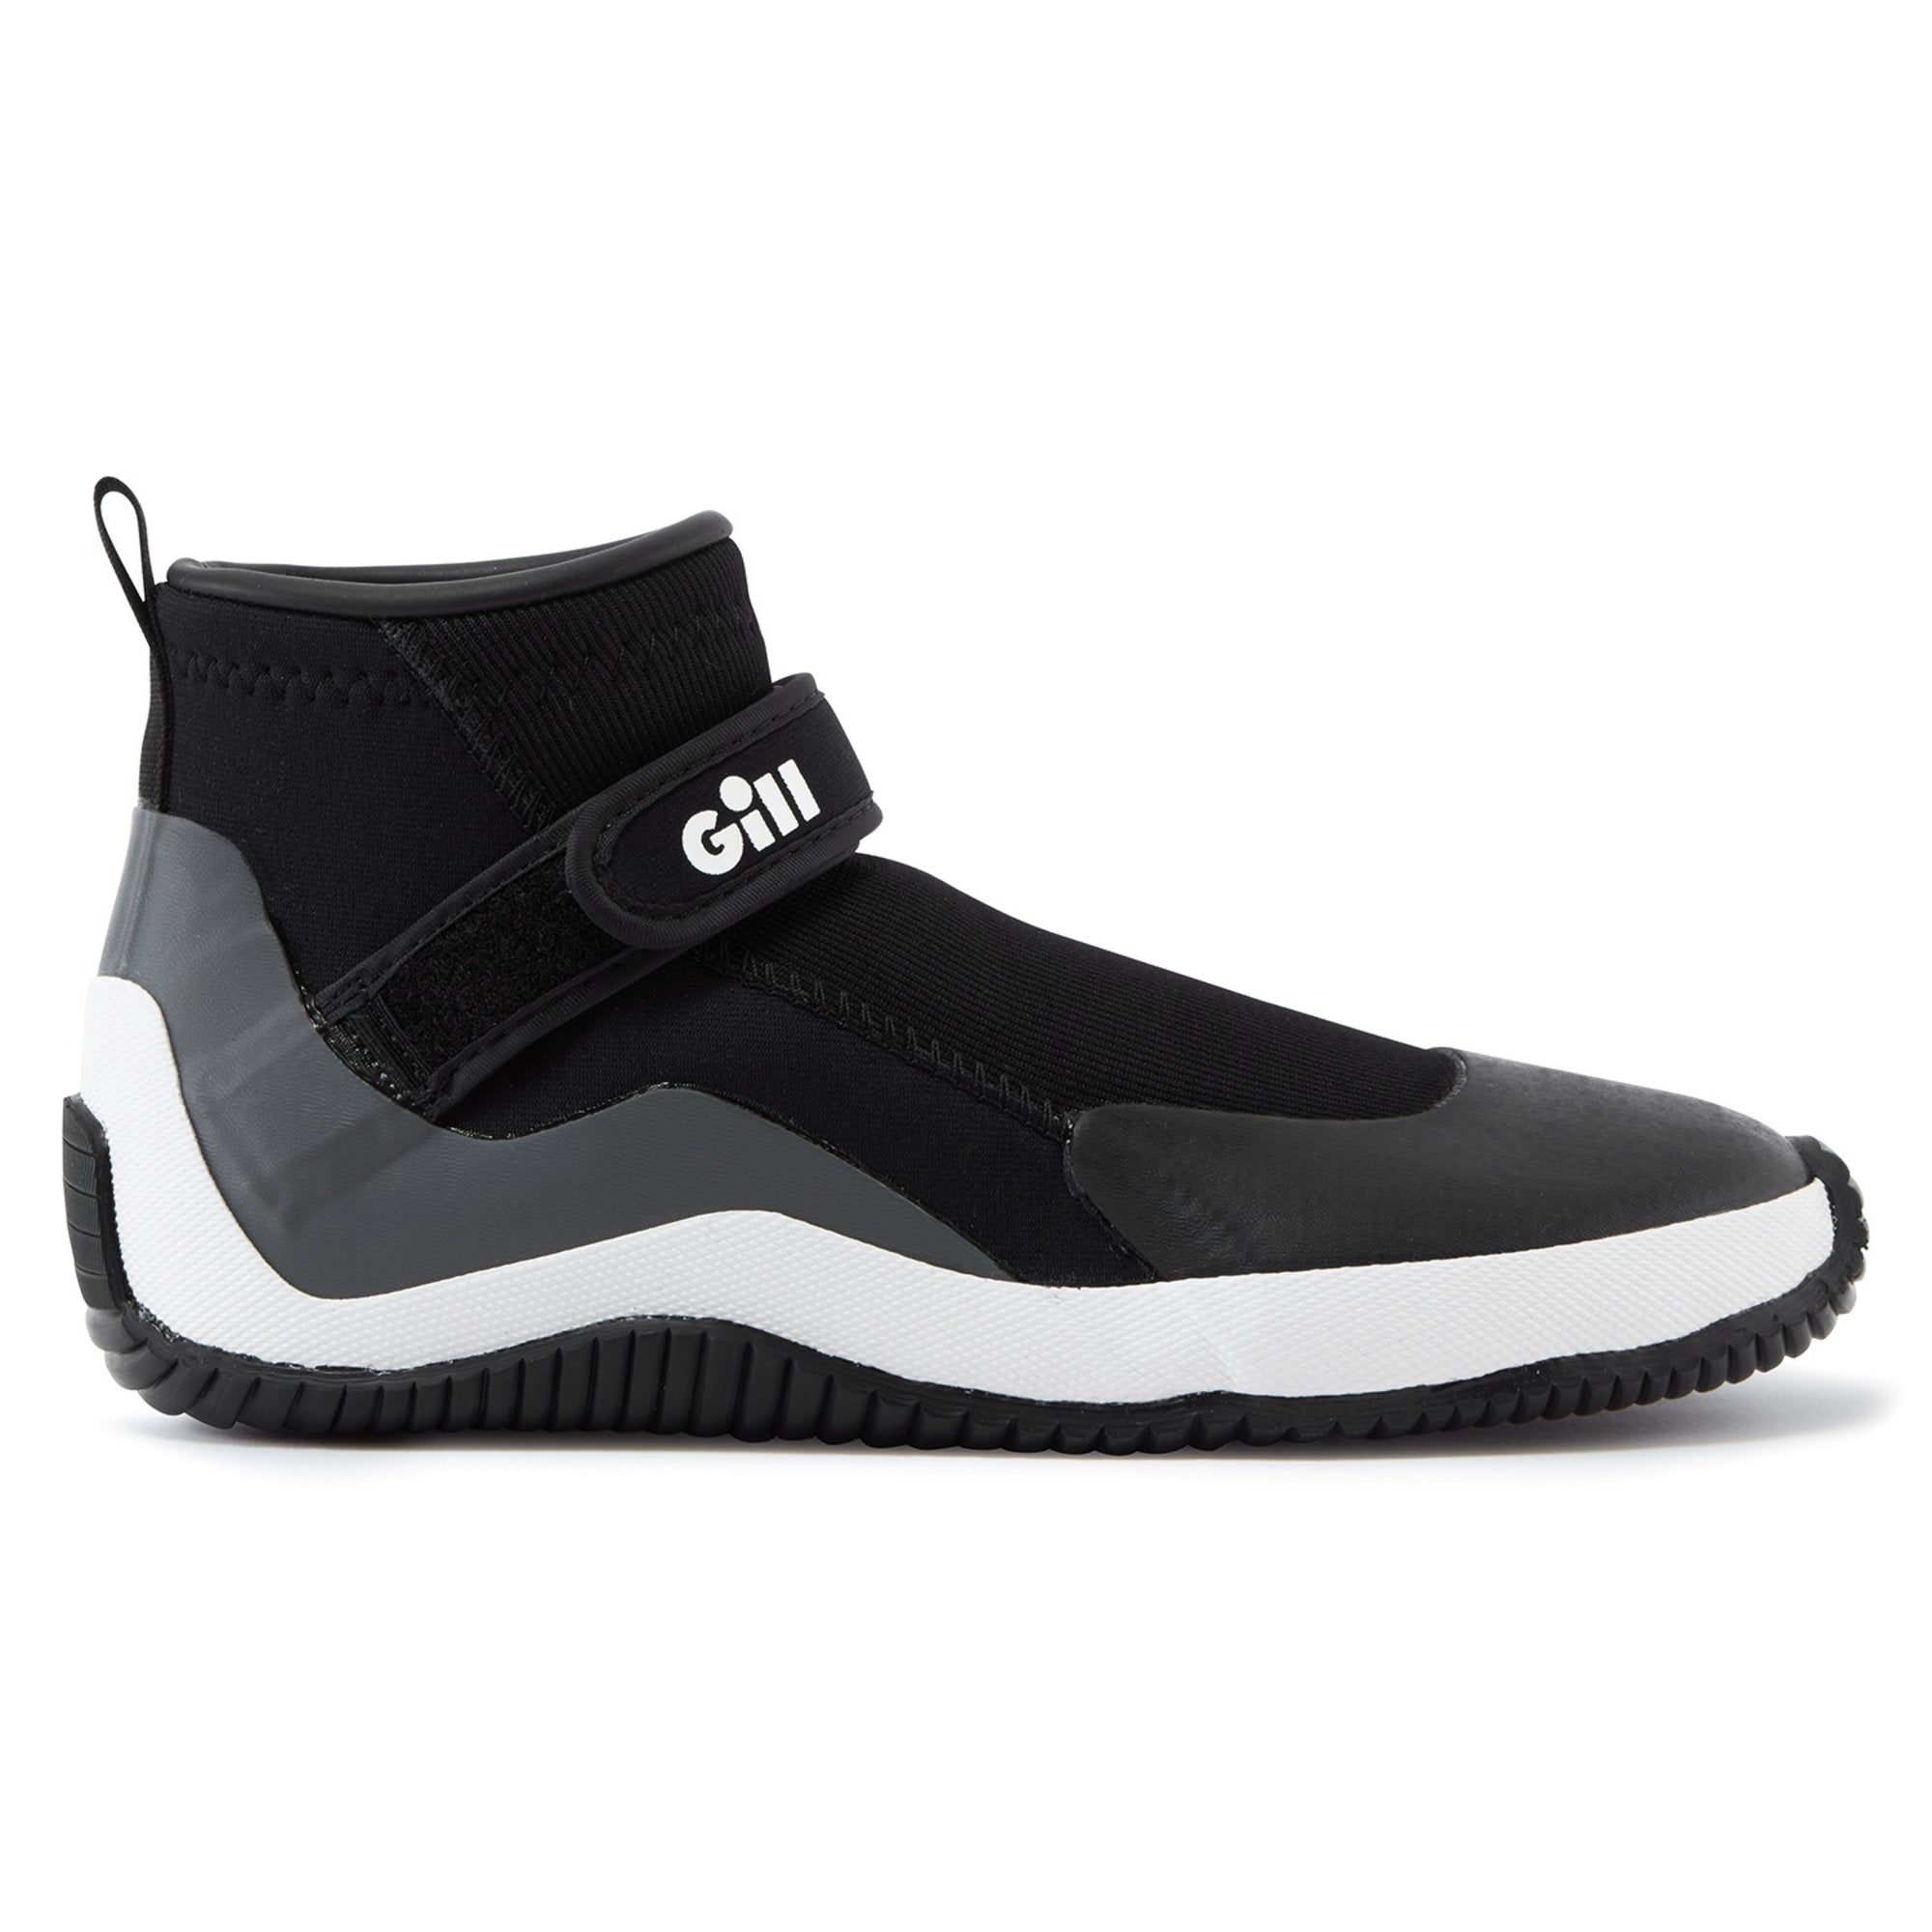 GILL Aquatech Shoe